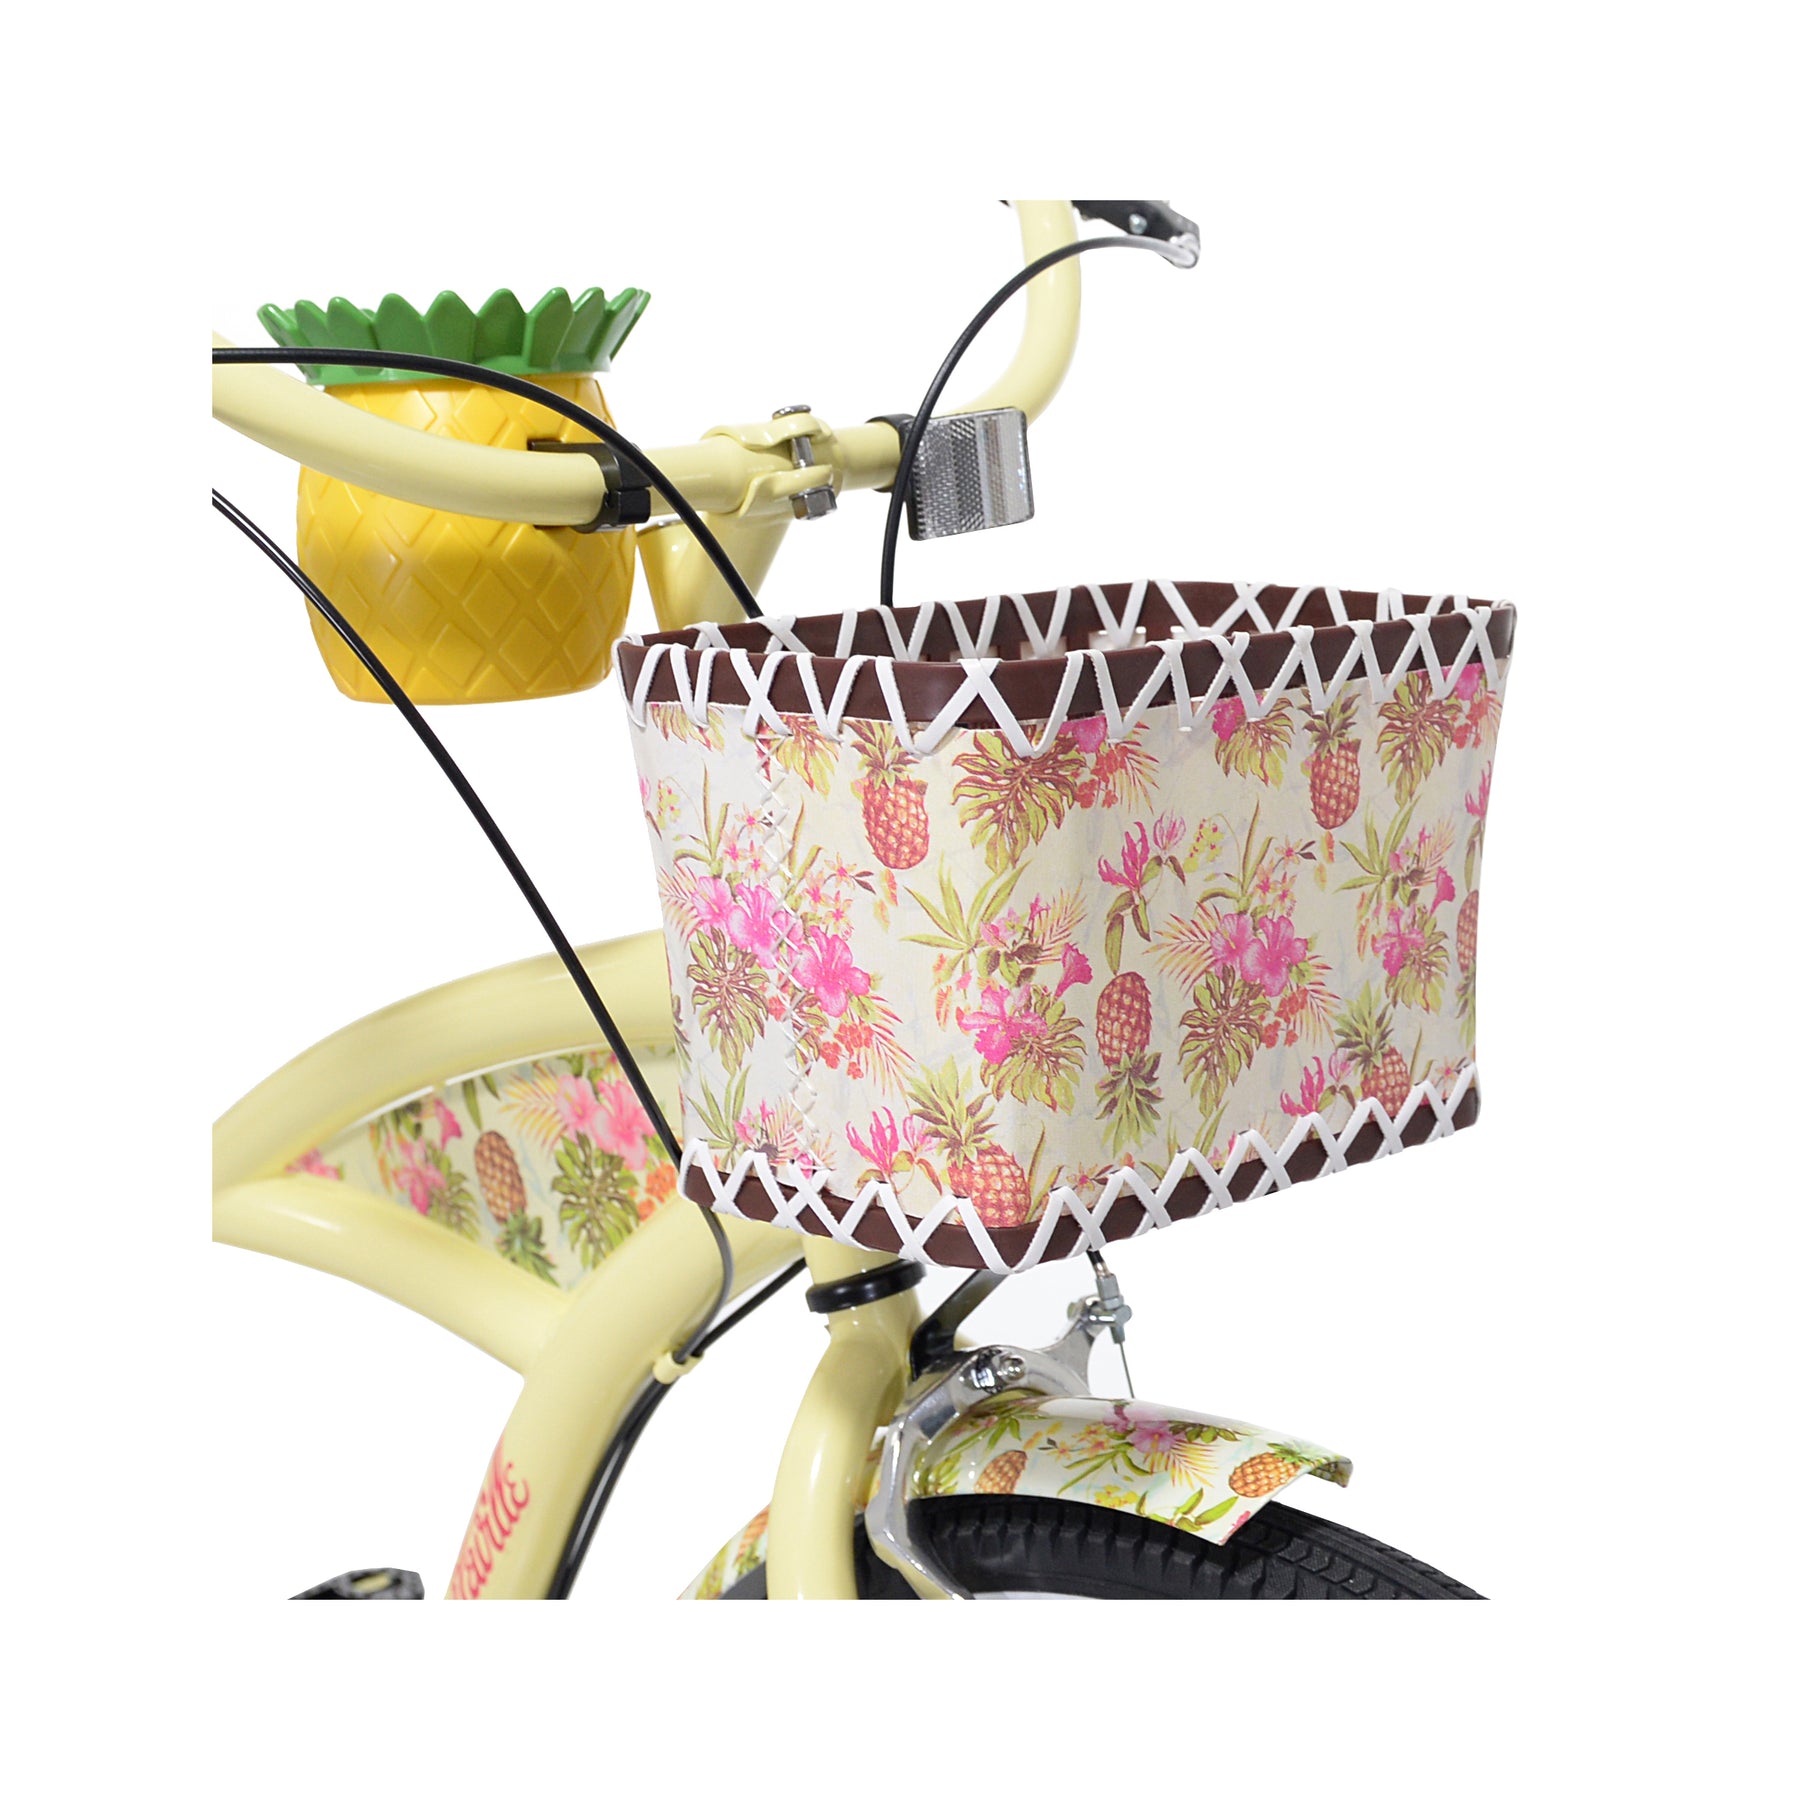 26" Margaritaville® Pineapple | Cruiser Bike for Women Ages 13+